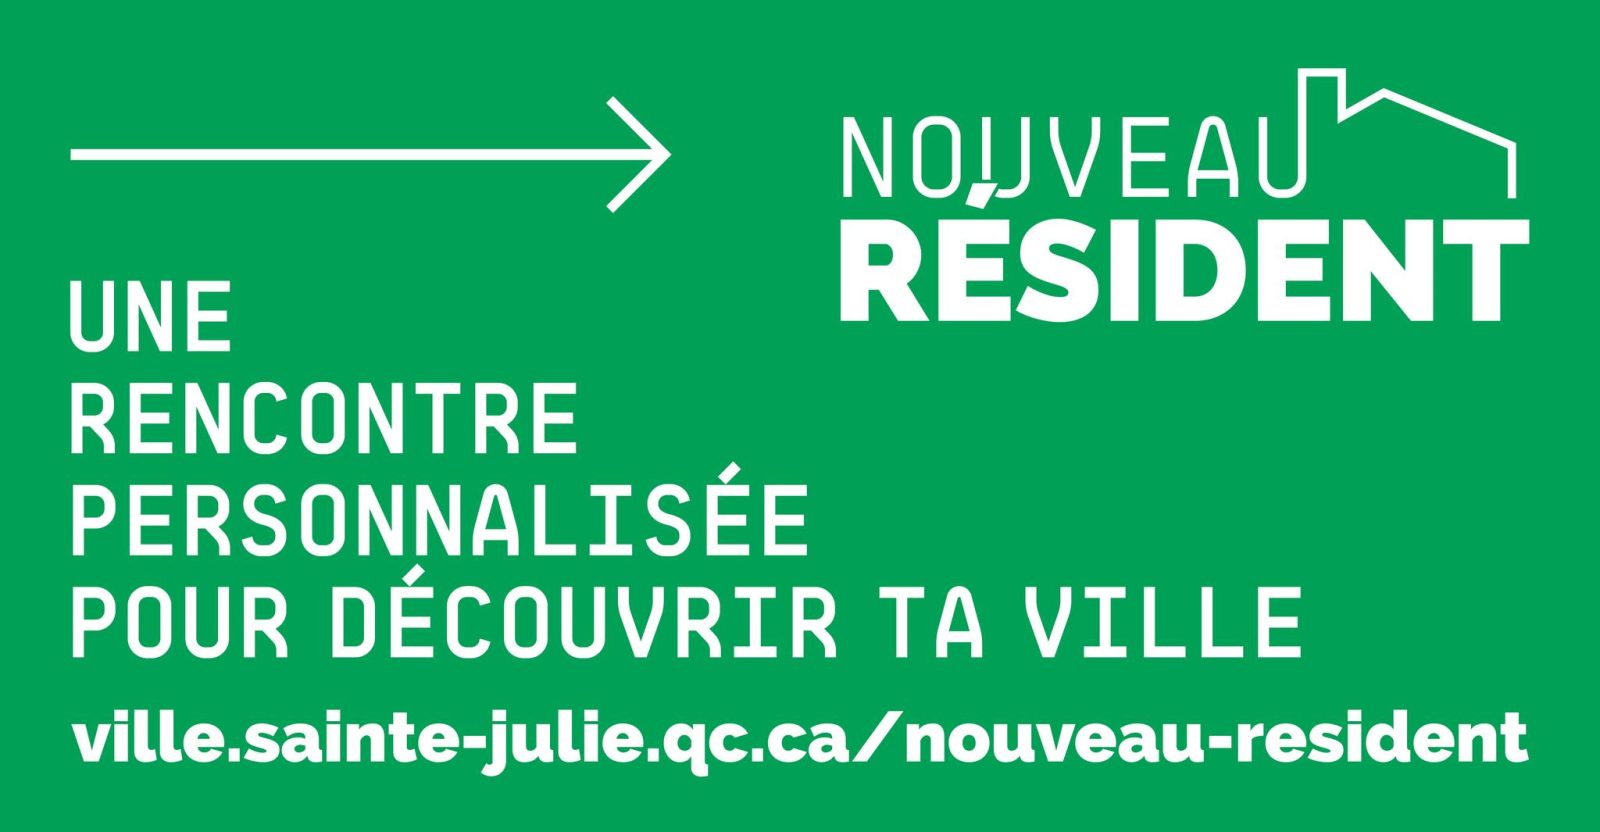 Une nouvelle initiative d’accueil pour les nouveaux résidents : Sainte-Julie lance des rencontres personnalisées